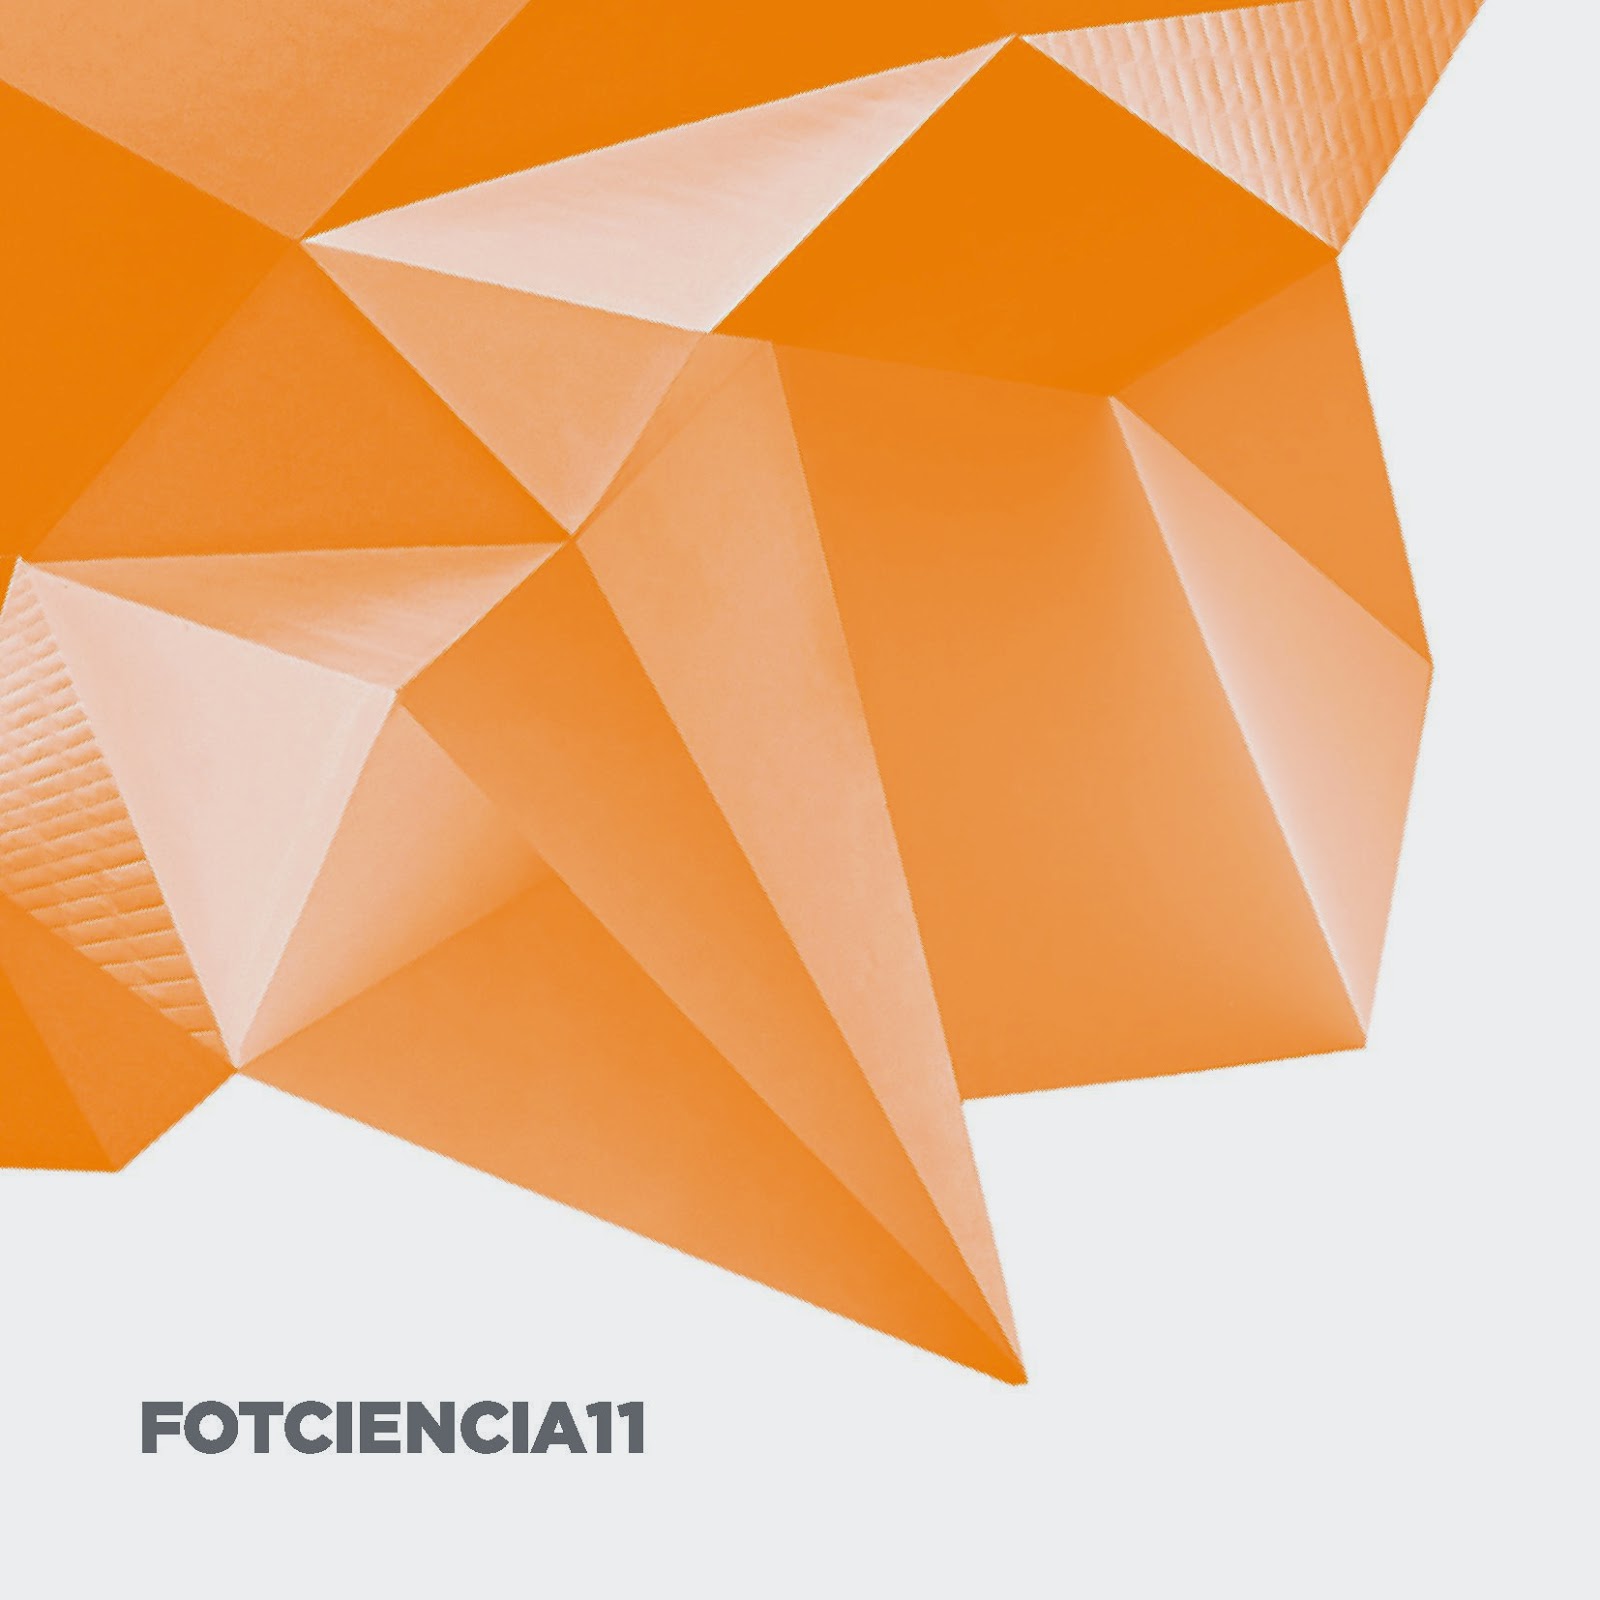 Fotciencia11 - catálogo completo.